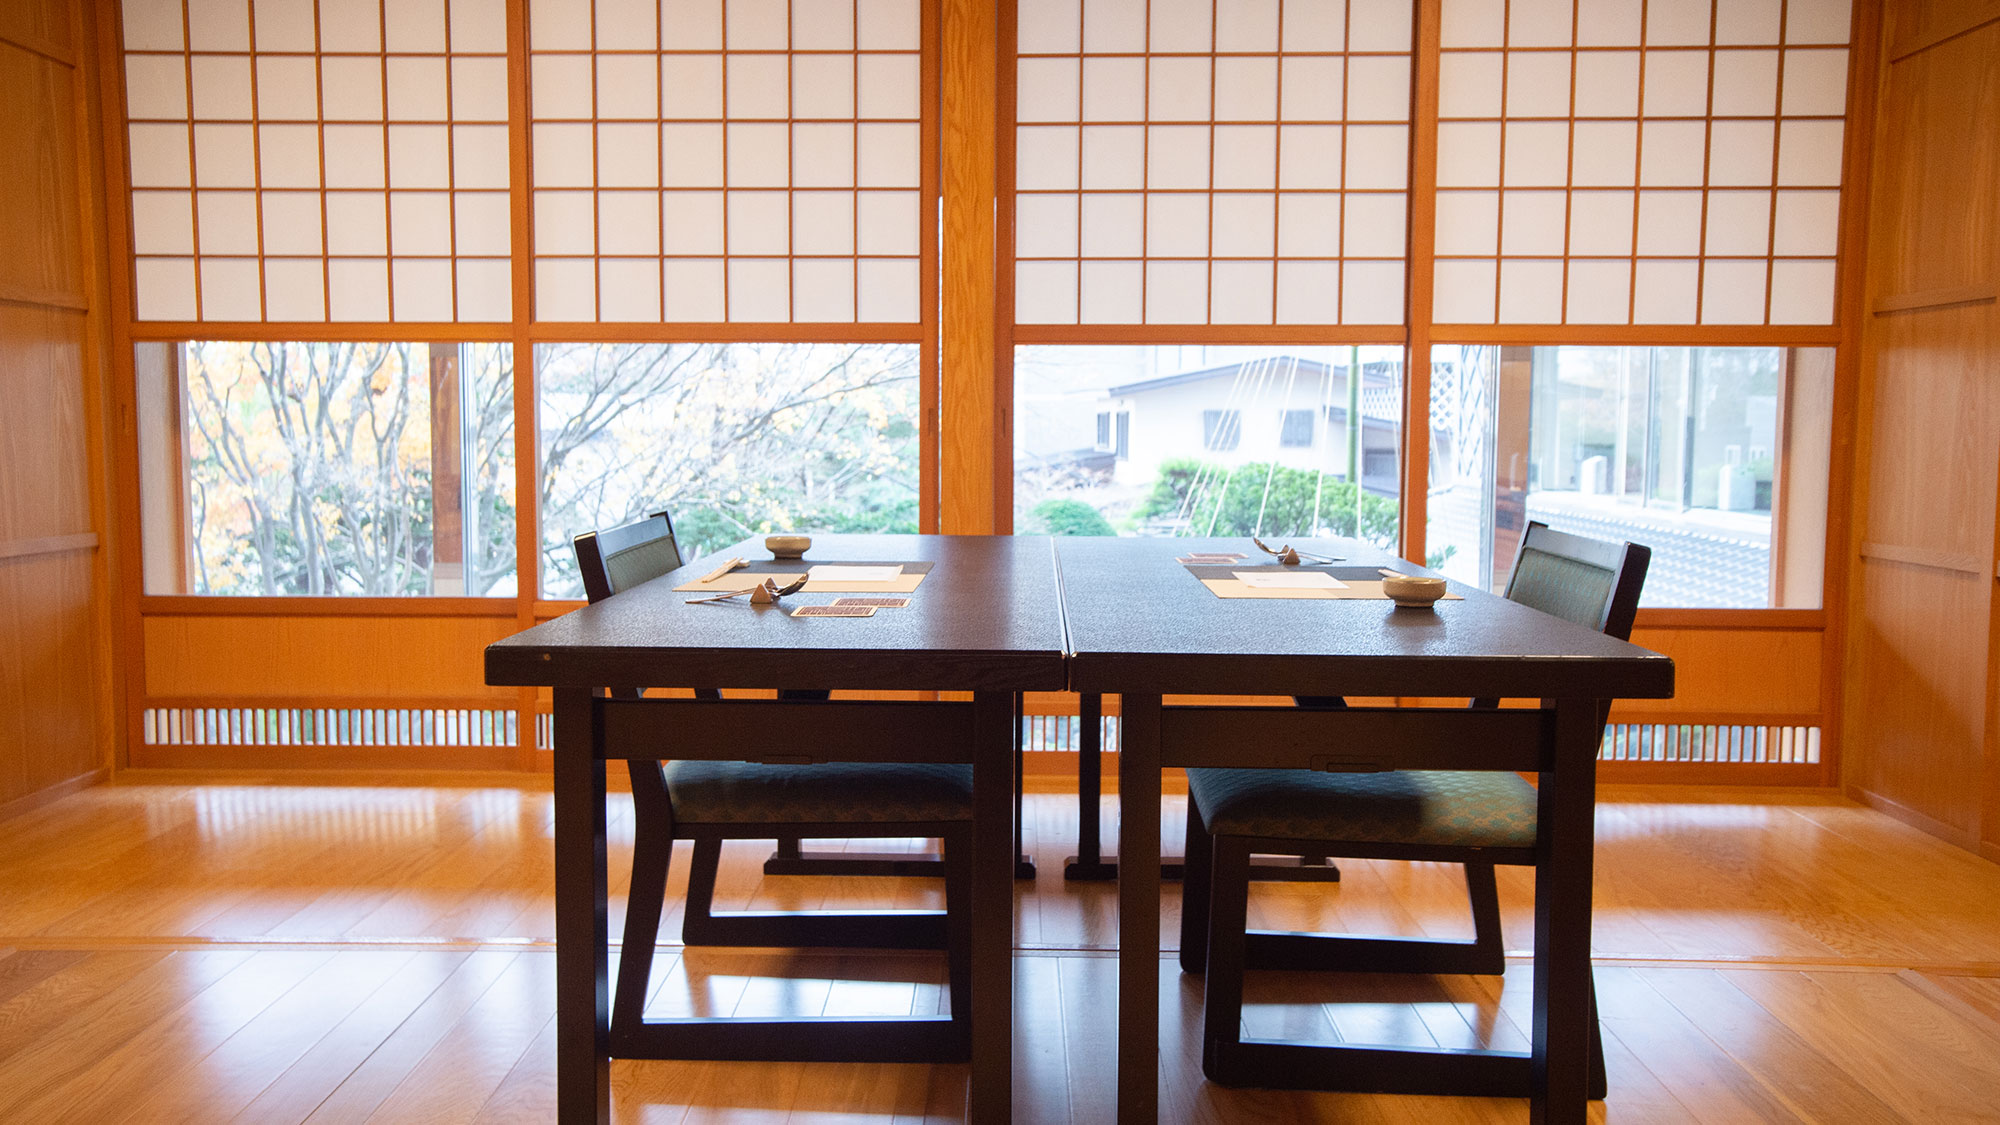 【食事処KITAMAE】8名様までご利用可能な庭園が見えるお席もございます。